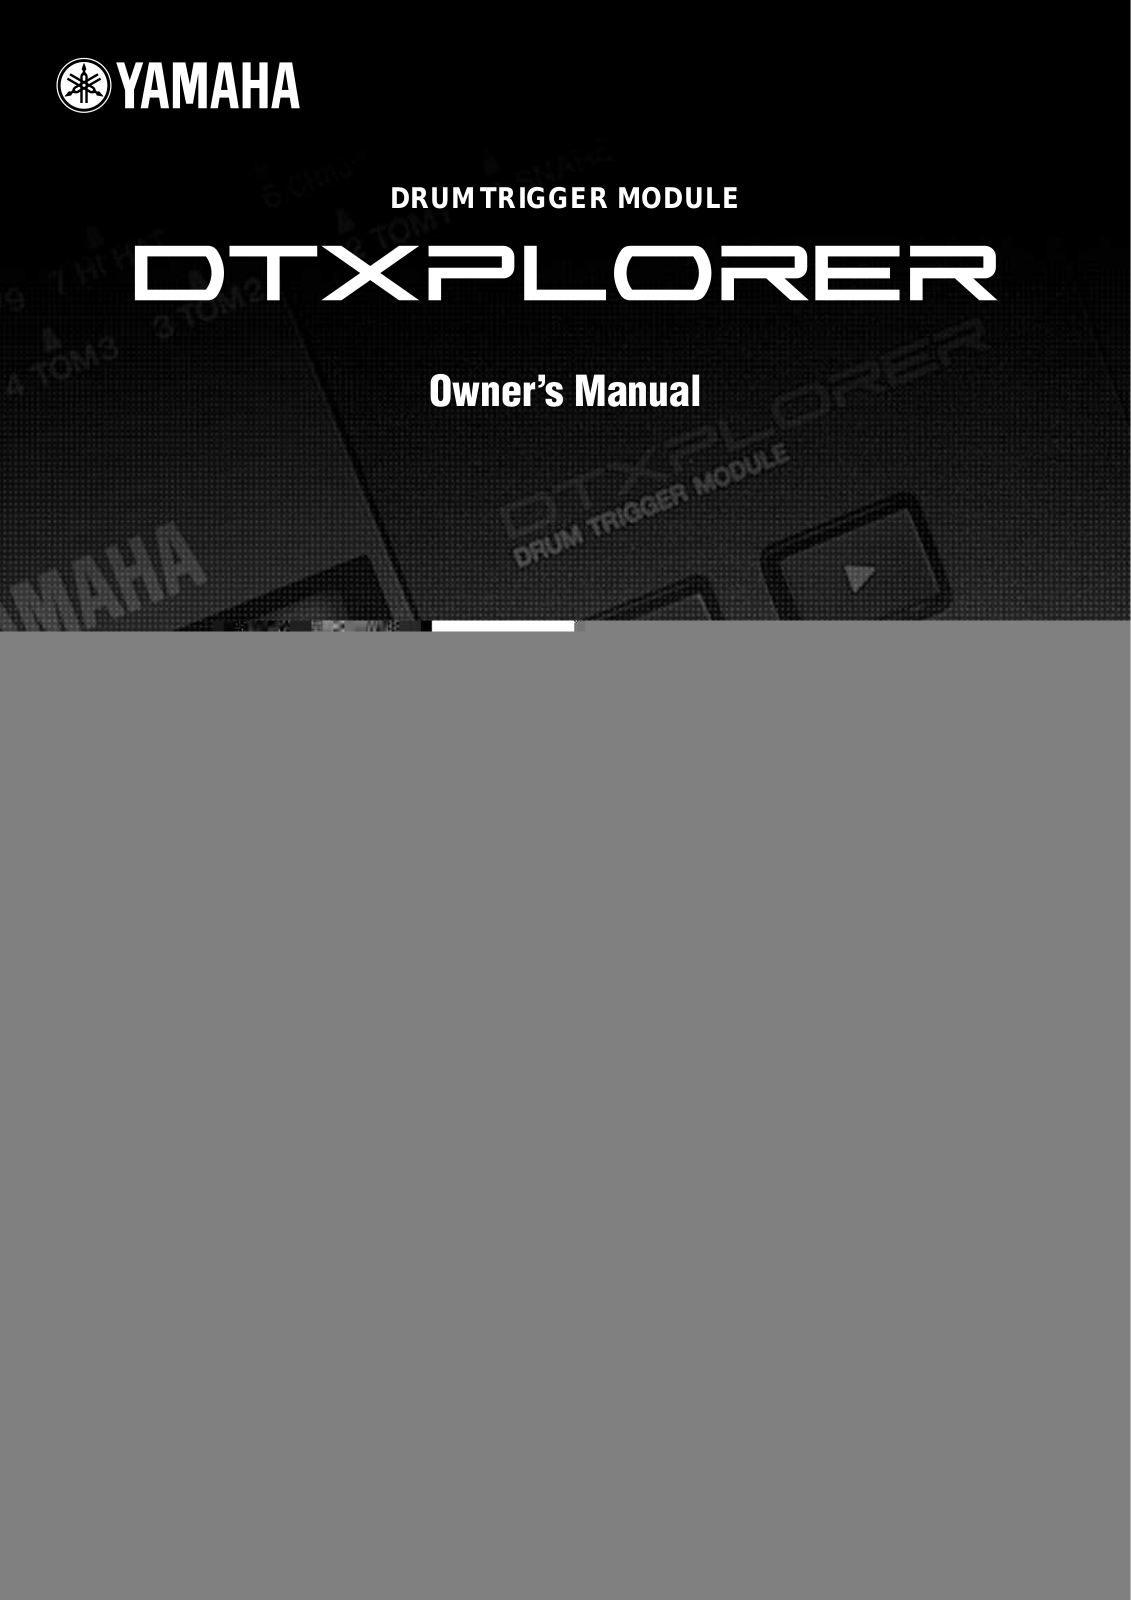 Yamaha DTXPLORER User Manual 2